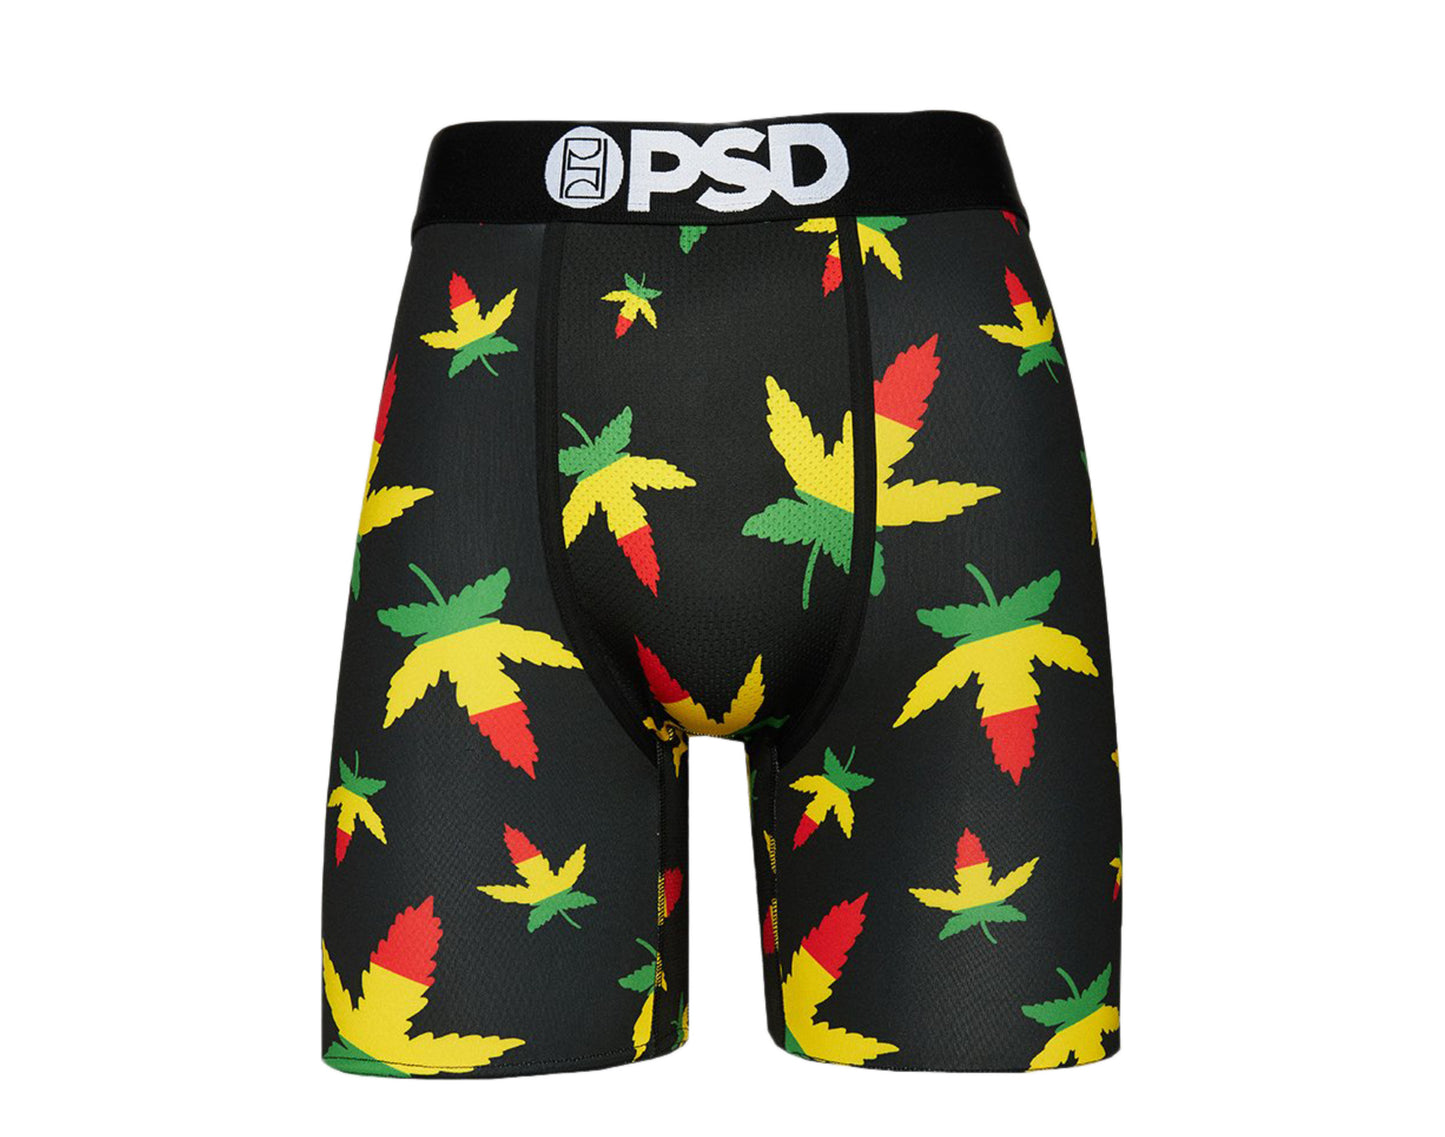 PSD Weed Rasta OG Boxer Briefs Men's Underwear